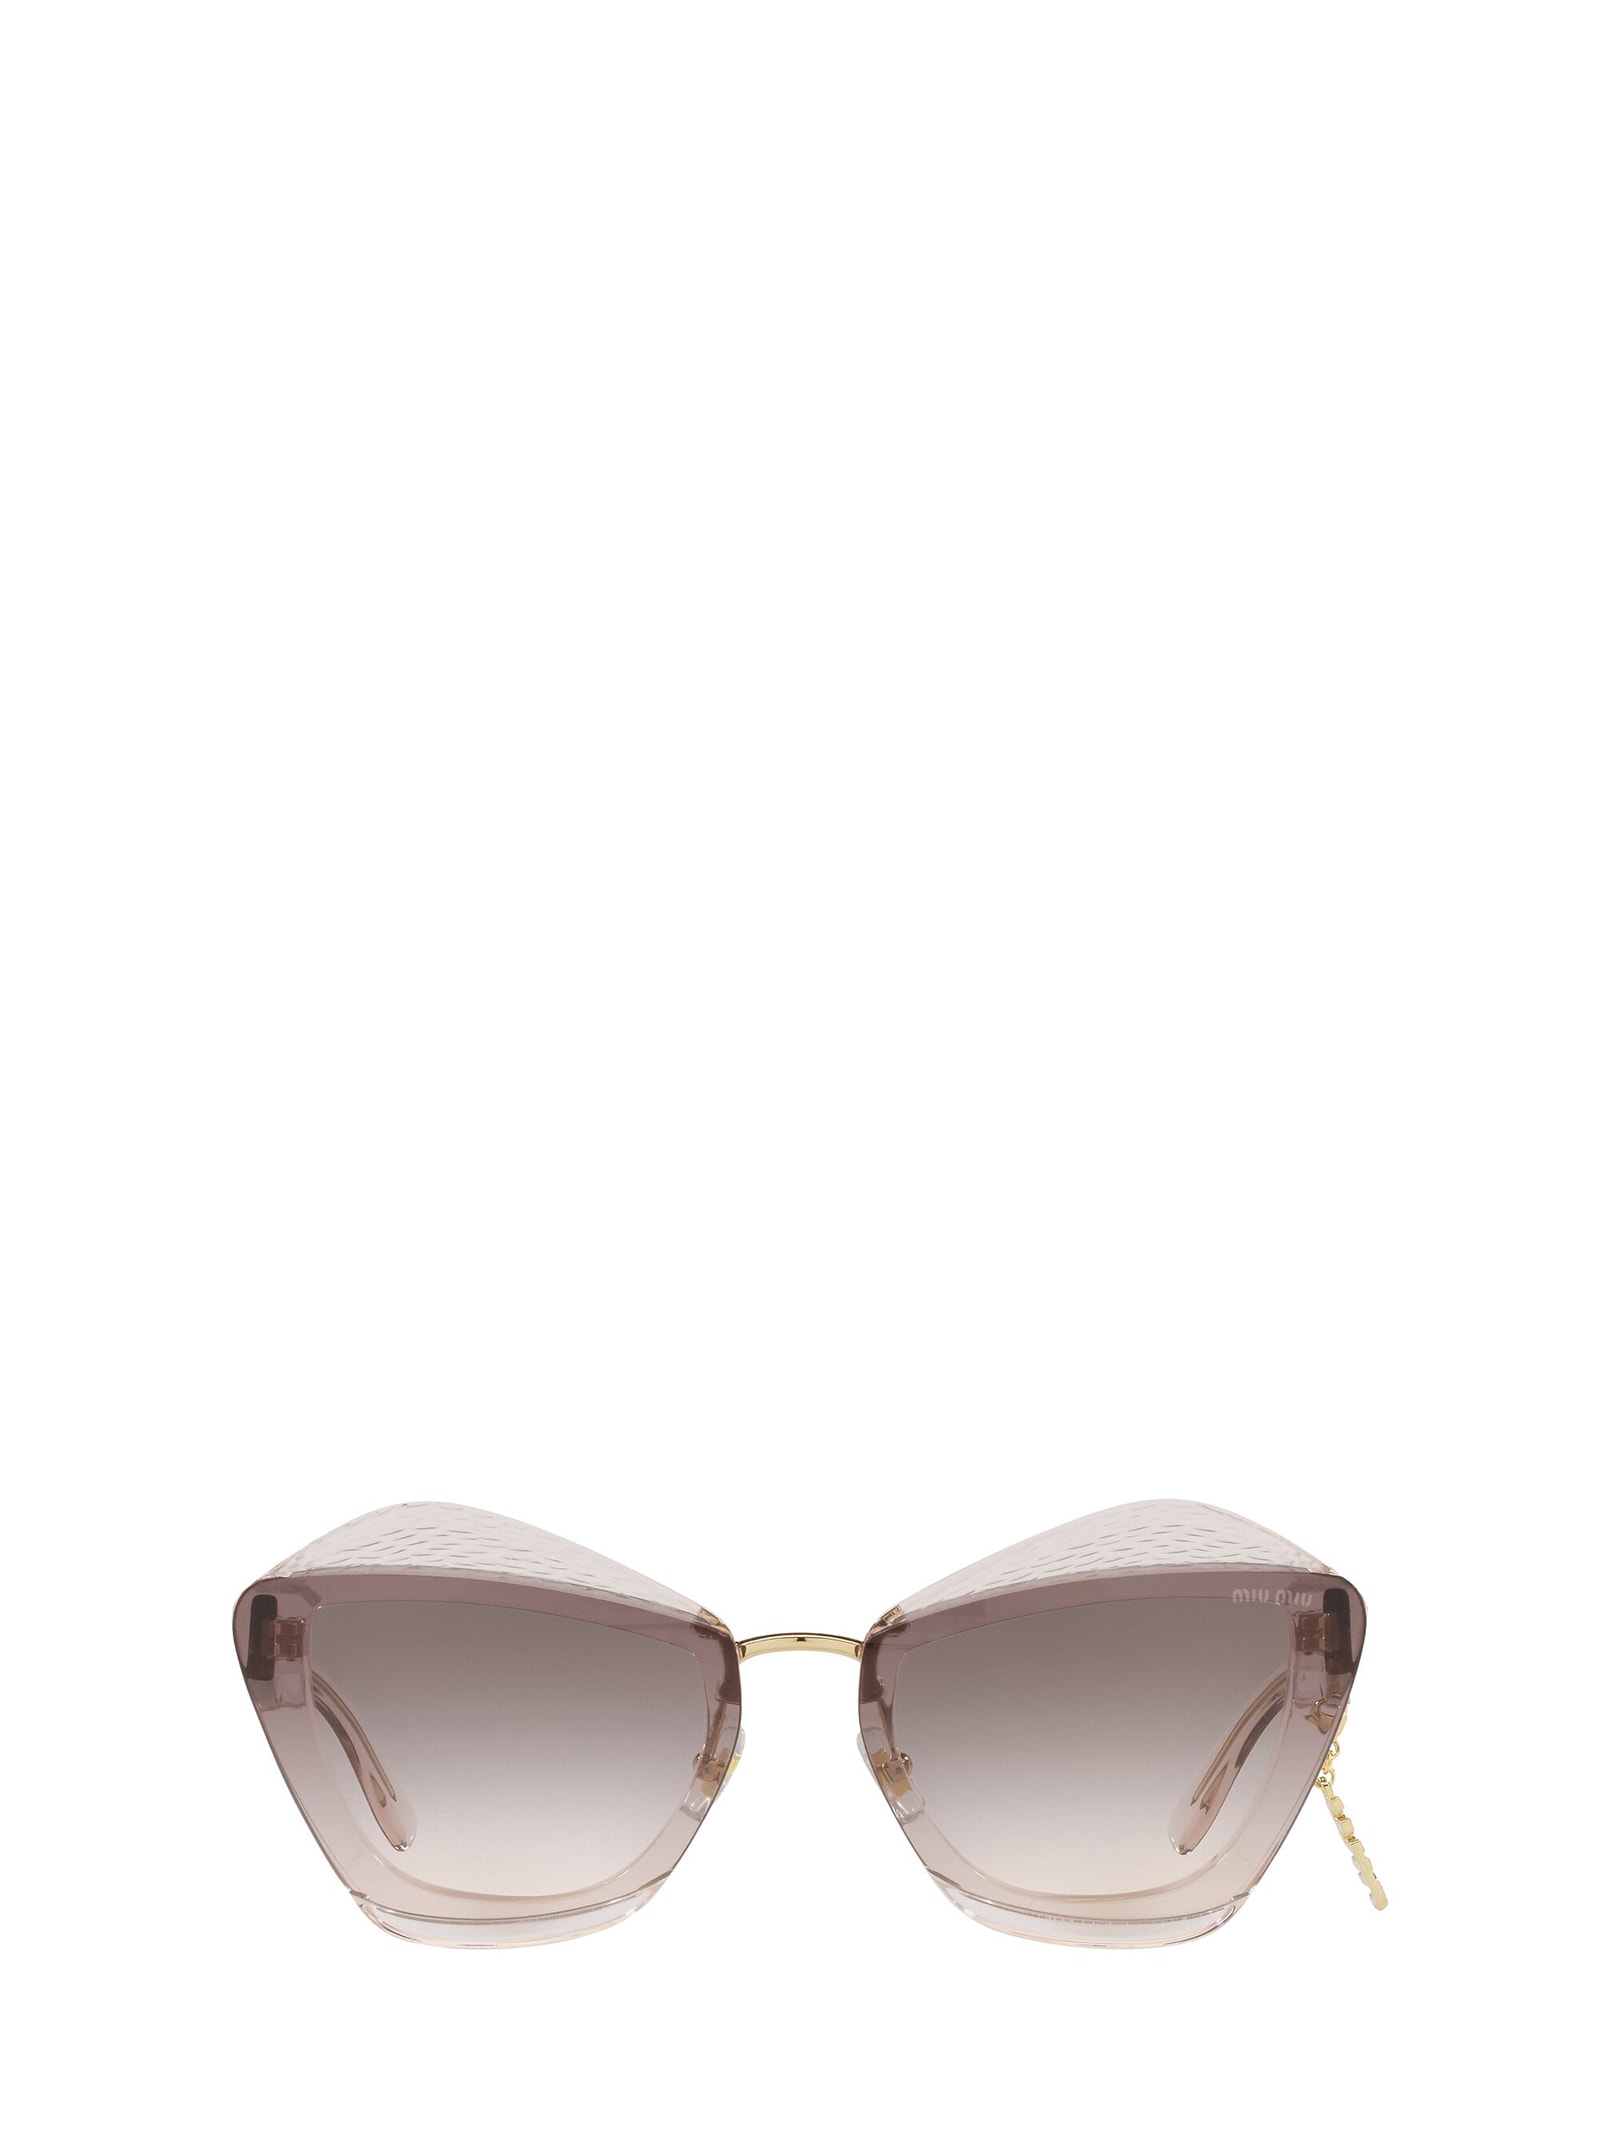 Miu Miu Eyewear Mu 01xs Light Brown Transparent Sunglasses